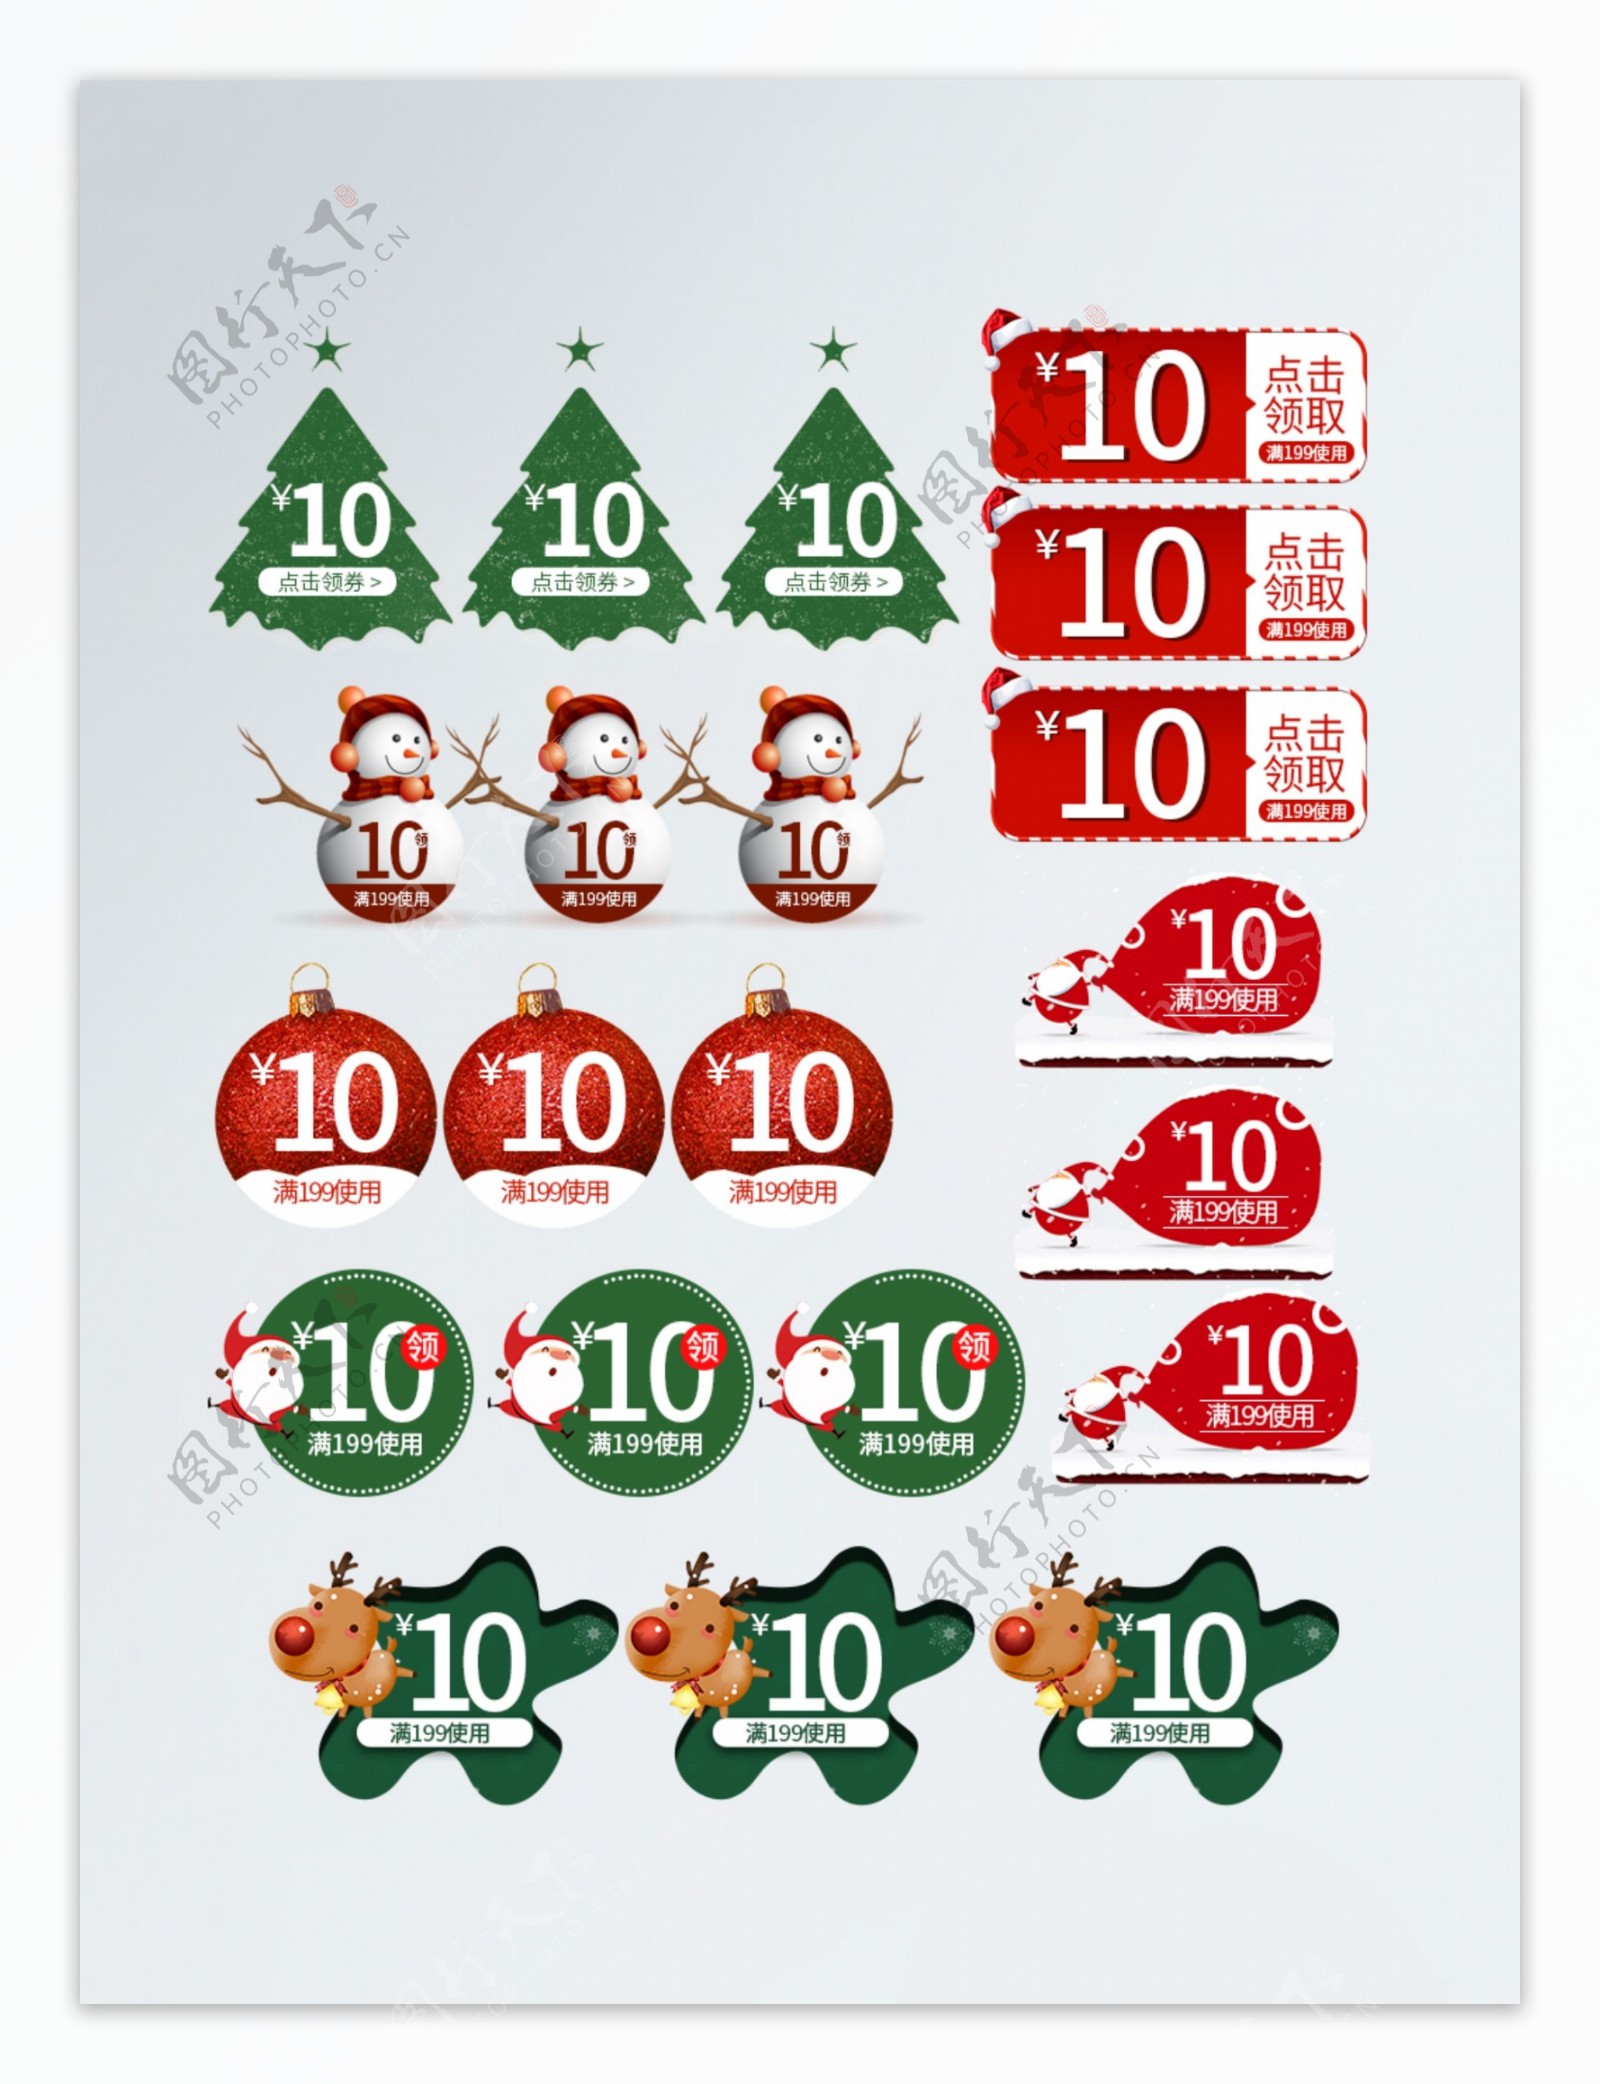 超级可爱圣诞老人雪人圣诞树标签优惠券模版